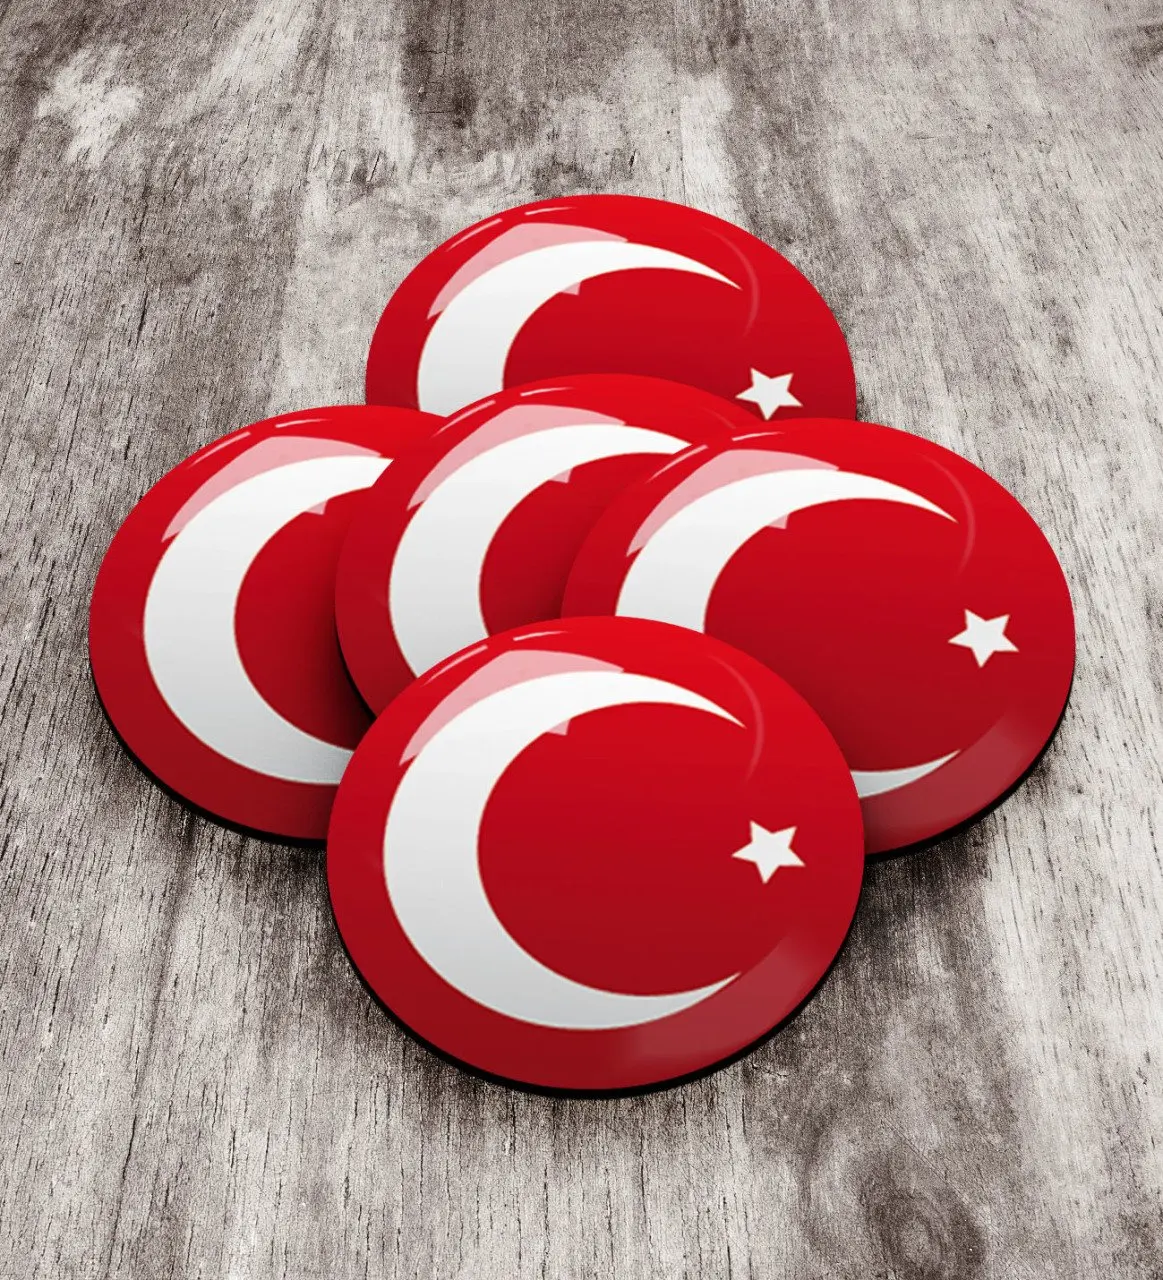 Деревянный значок с турецким флагом (5 шт.) 2 надежный современный простой подарок специальный дизайн хорошее качество сюрприз экономия горш... от AliExpress WW